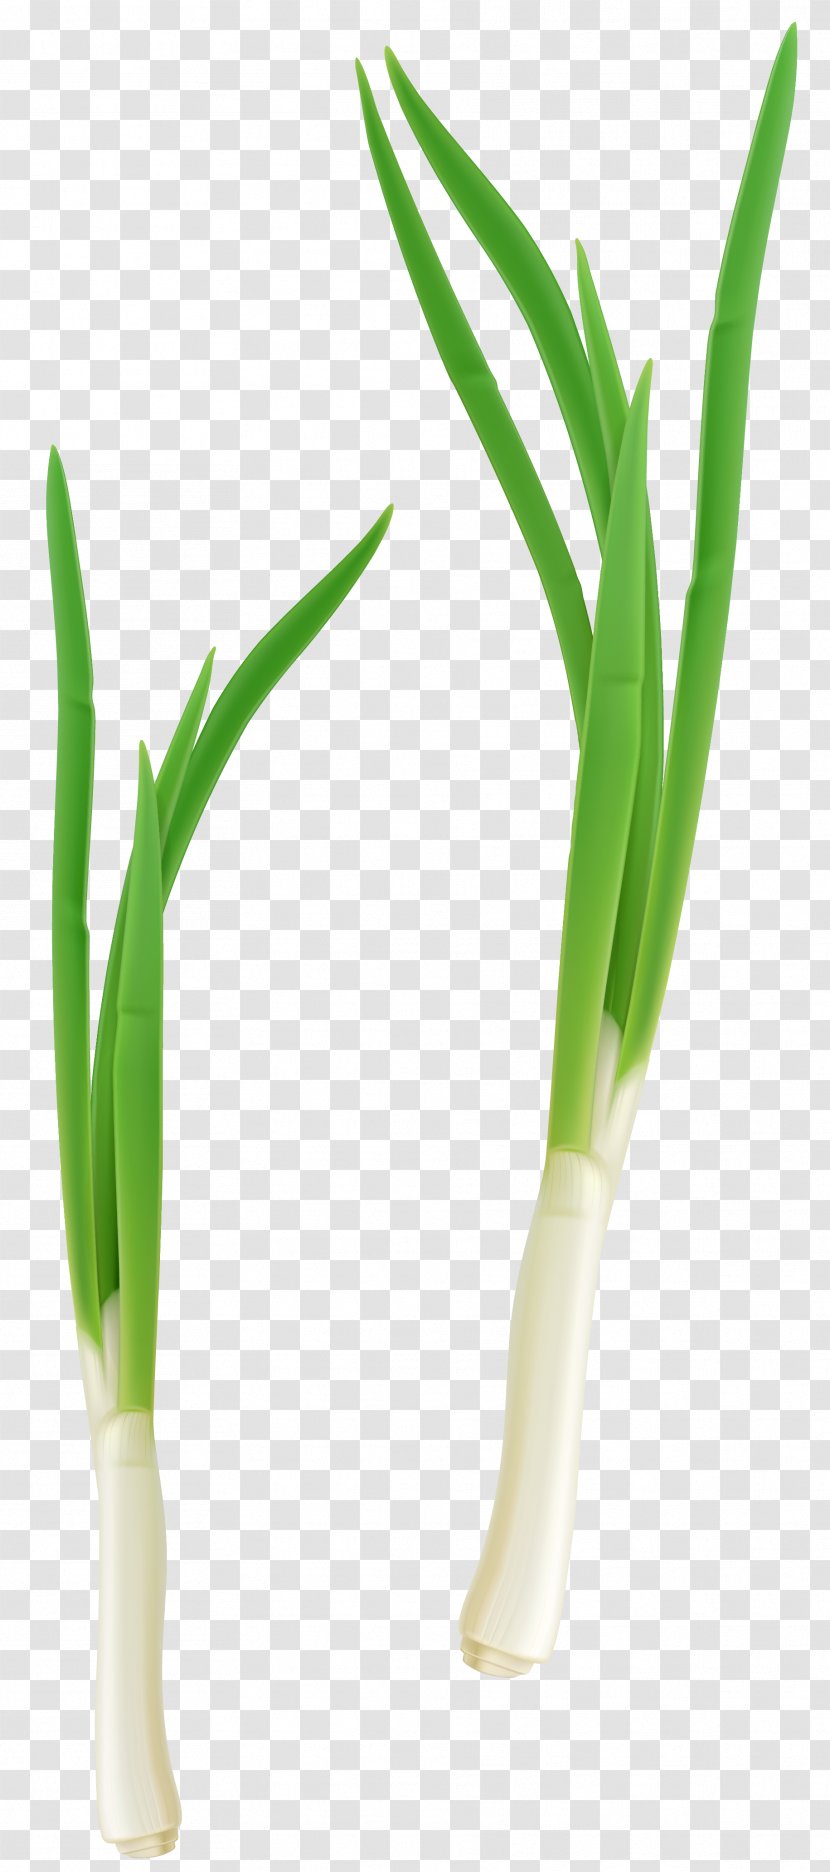 Grasses Flowerpot Allium Fistulosum - Welsh Onion - Green Fresh Clipart Transparent PNG